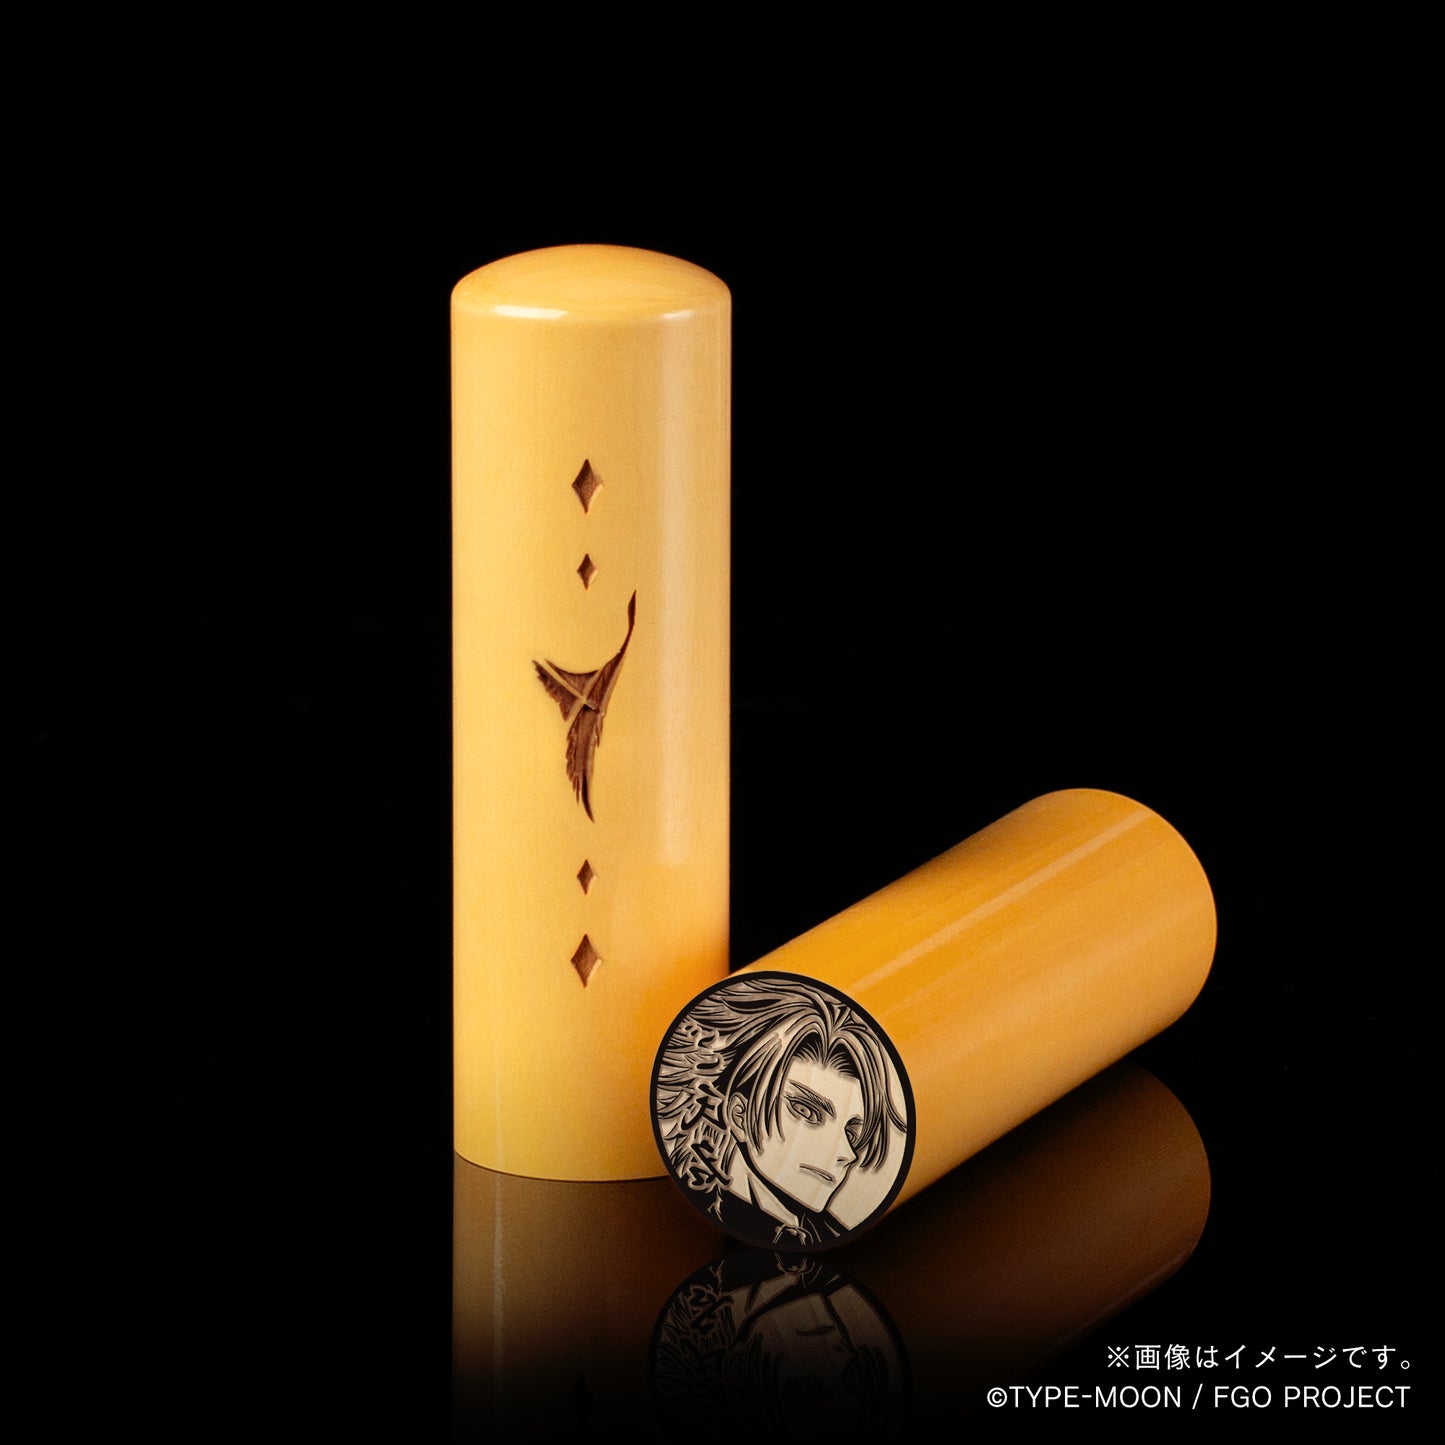 【Fate Grand Order】デイビット・ゼム・ヴォイド・丸印18mm&角印21mm